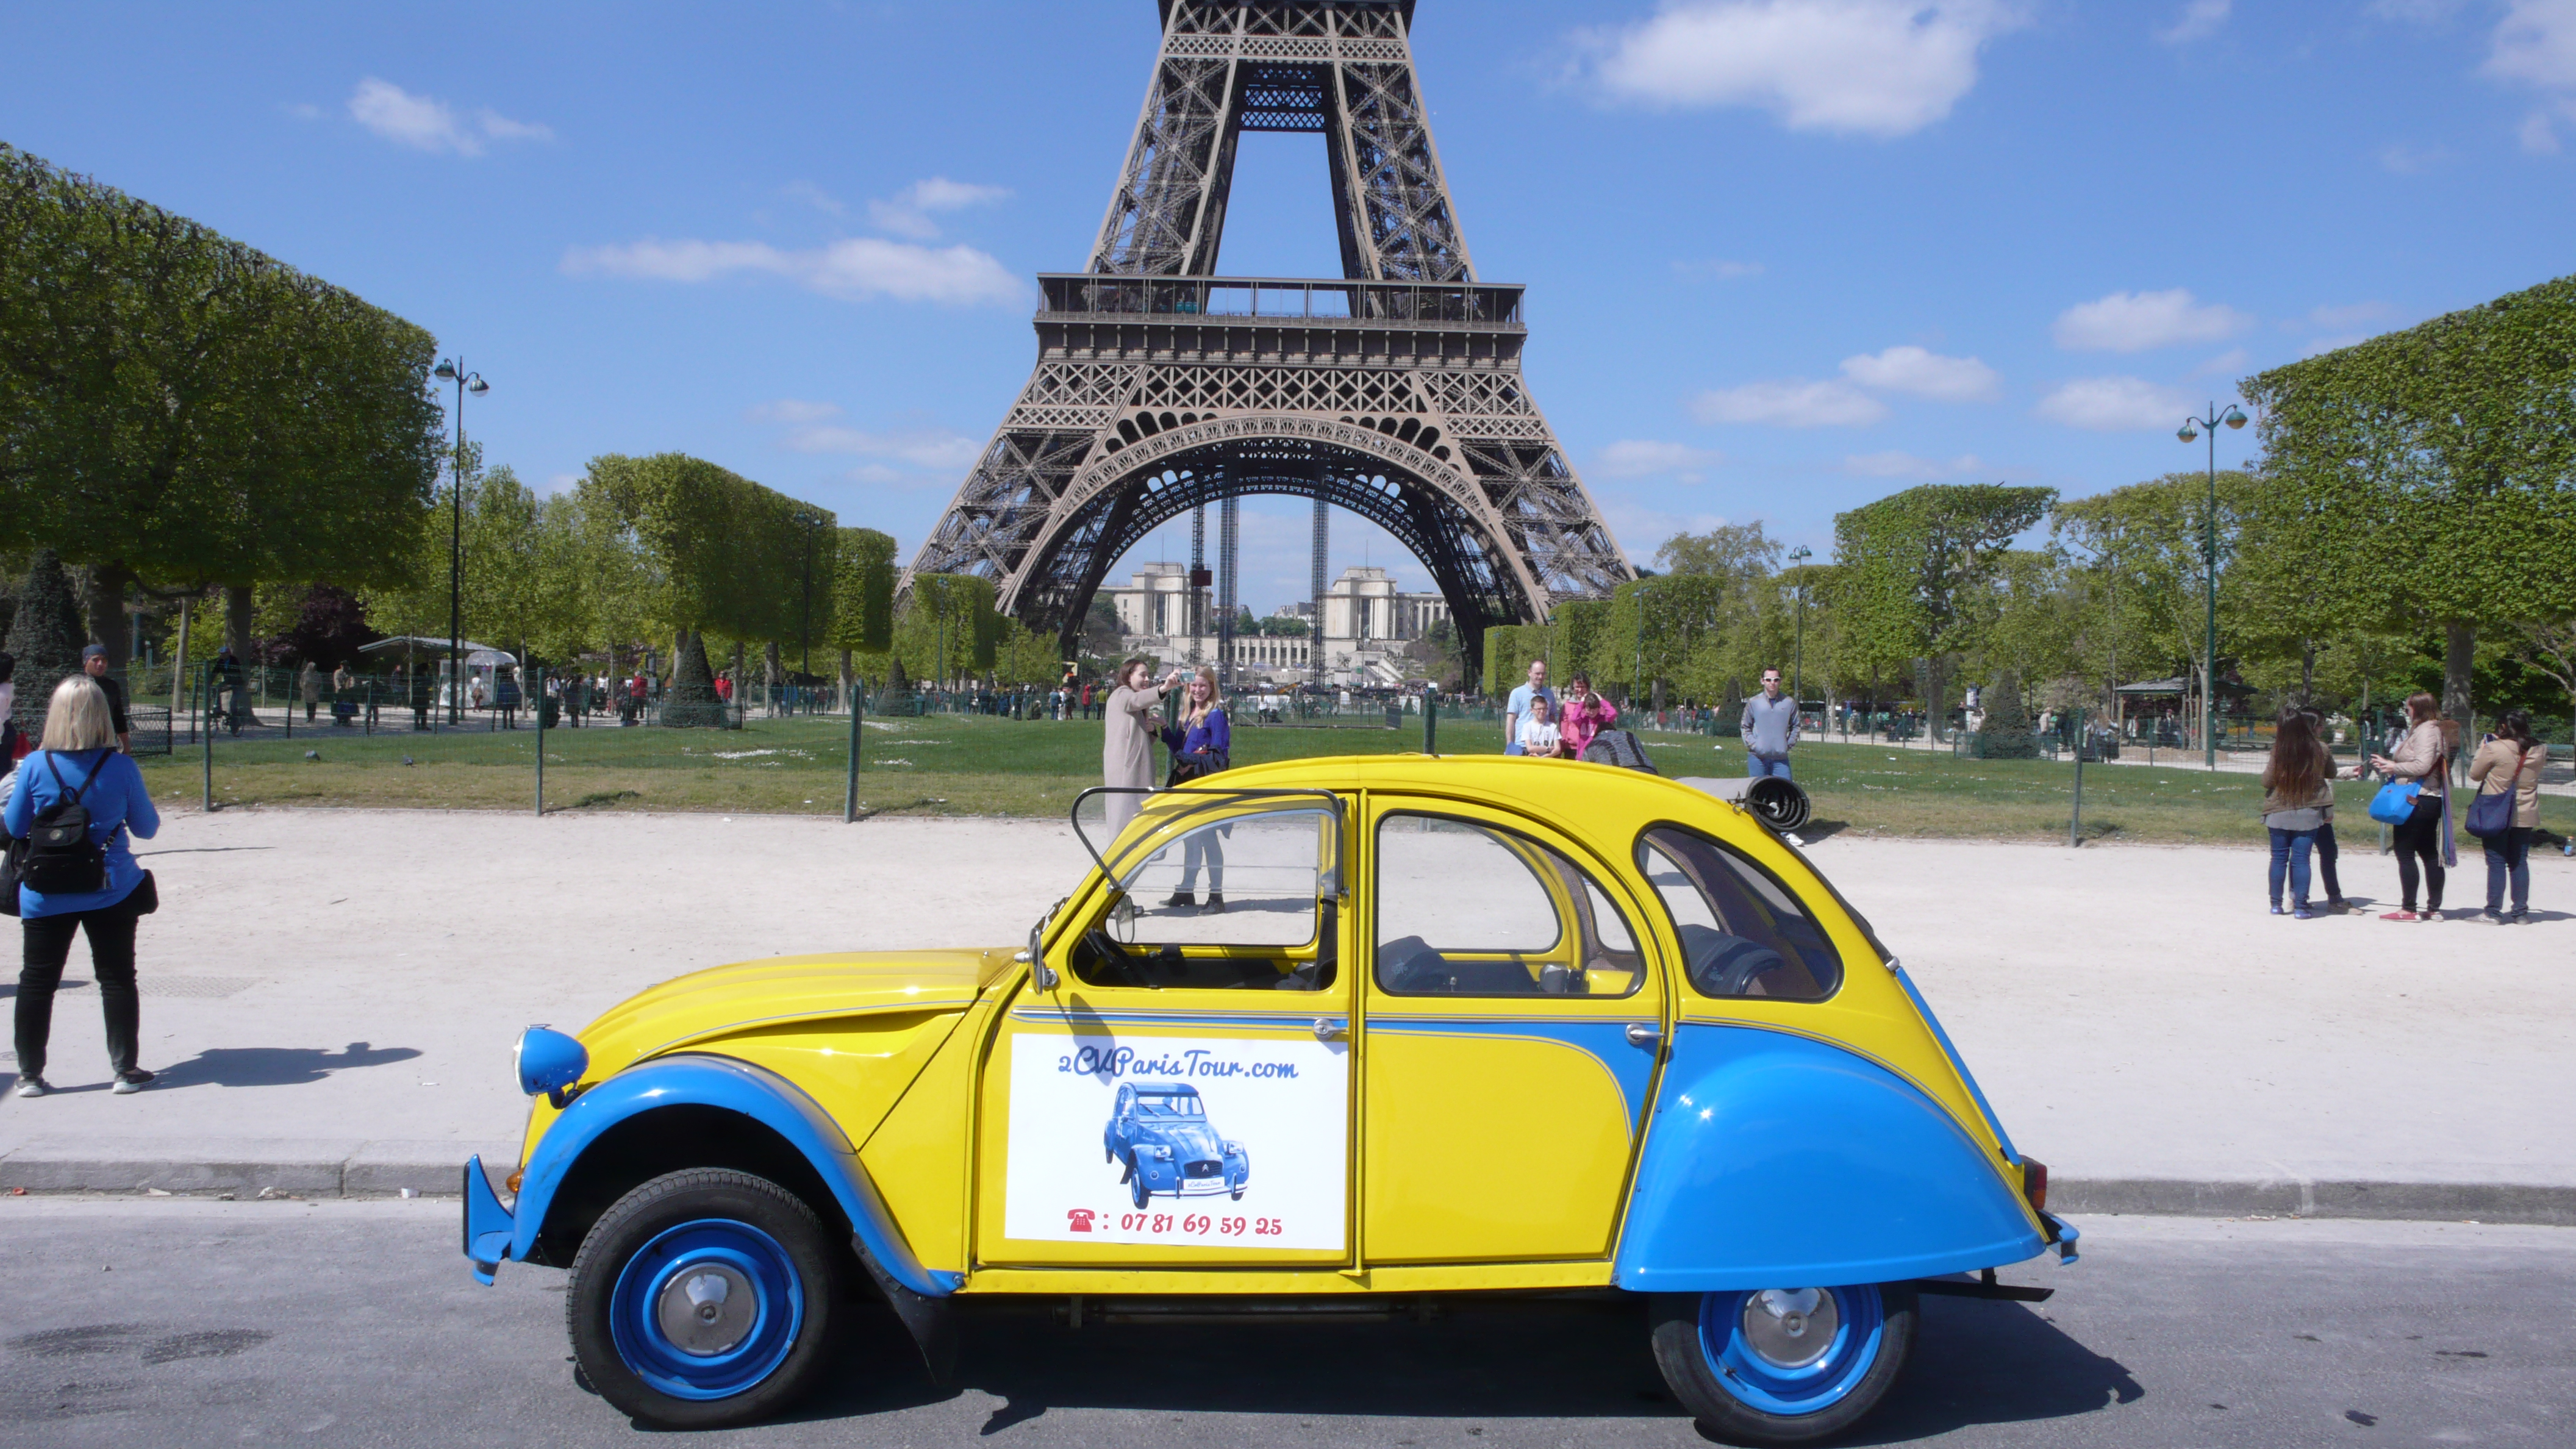 2CV Paris Tour : Visit Paris by 2CV! Eglantine has some rest